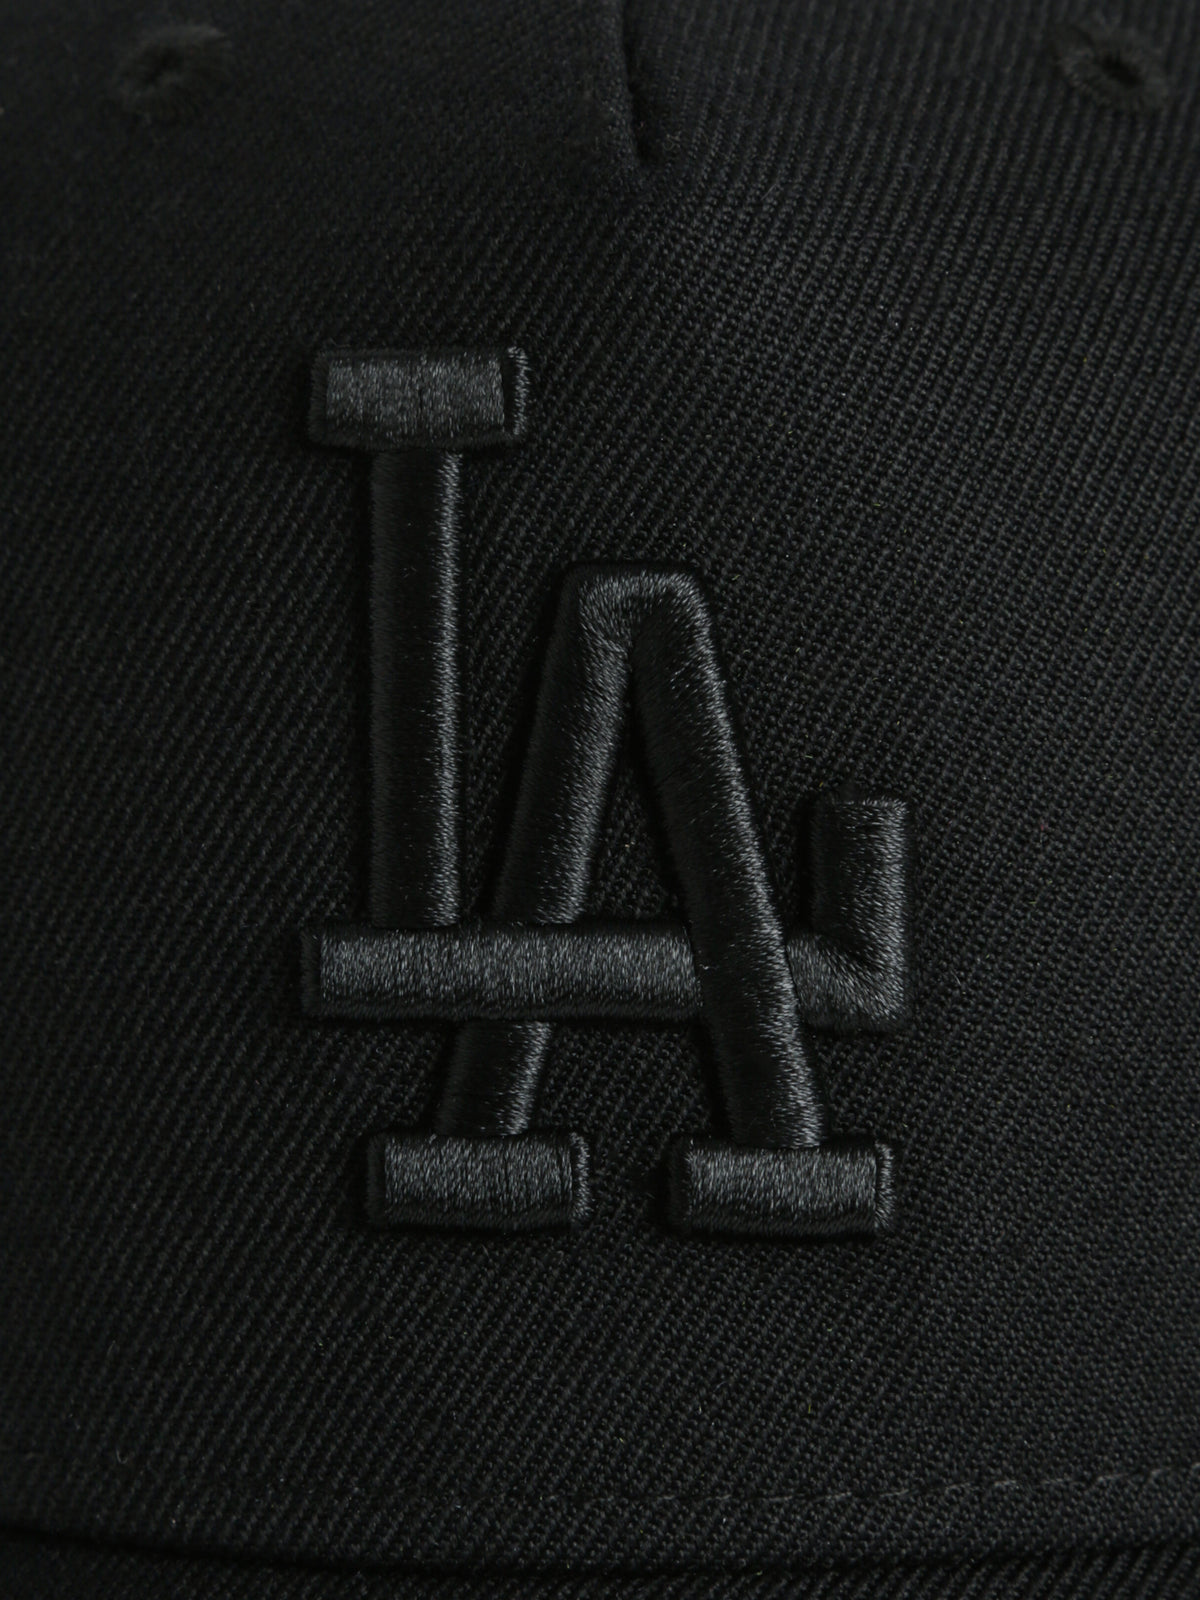 Los Angeles Dodgers Snapback Cap in Black